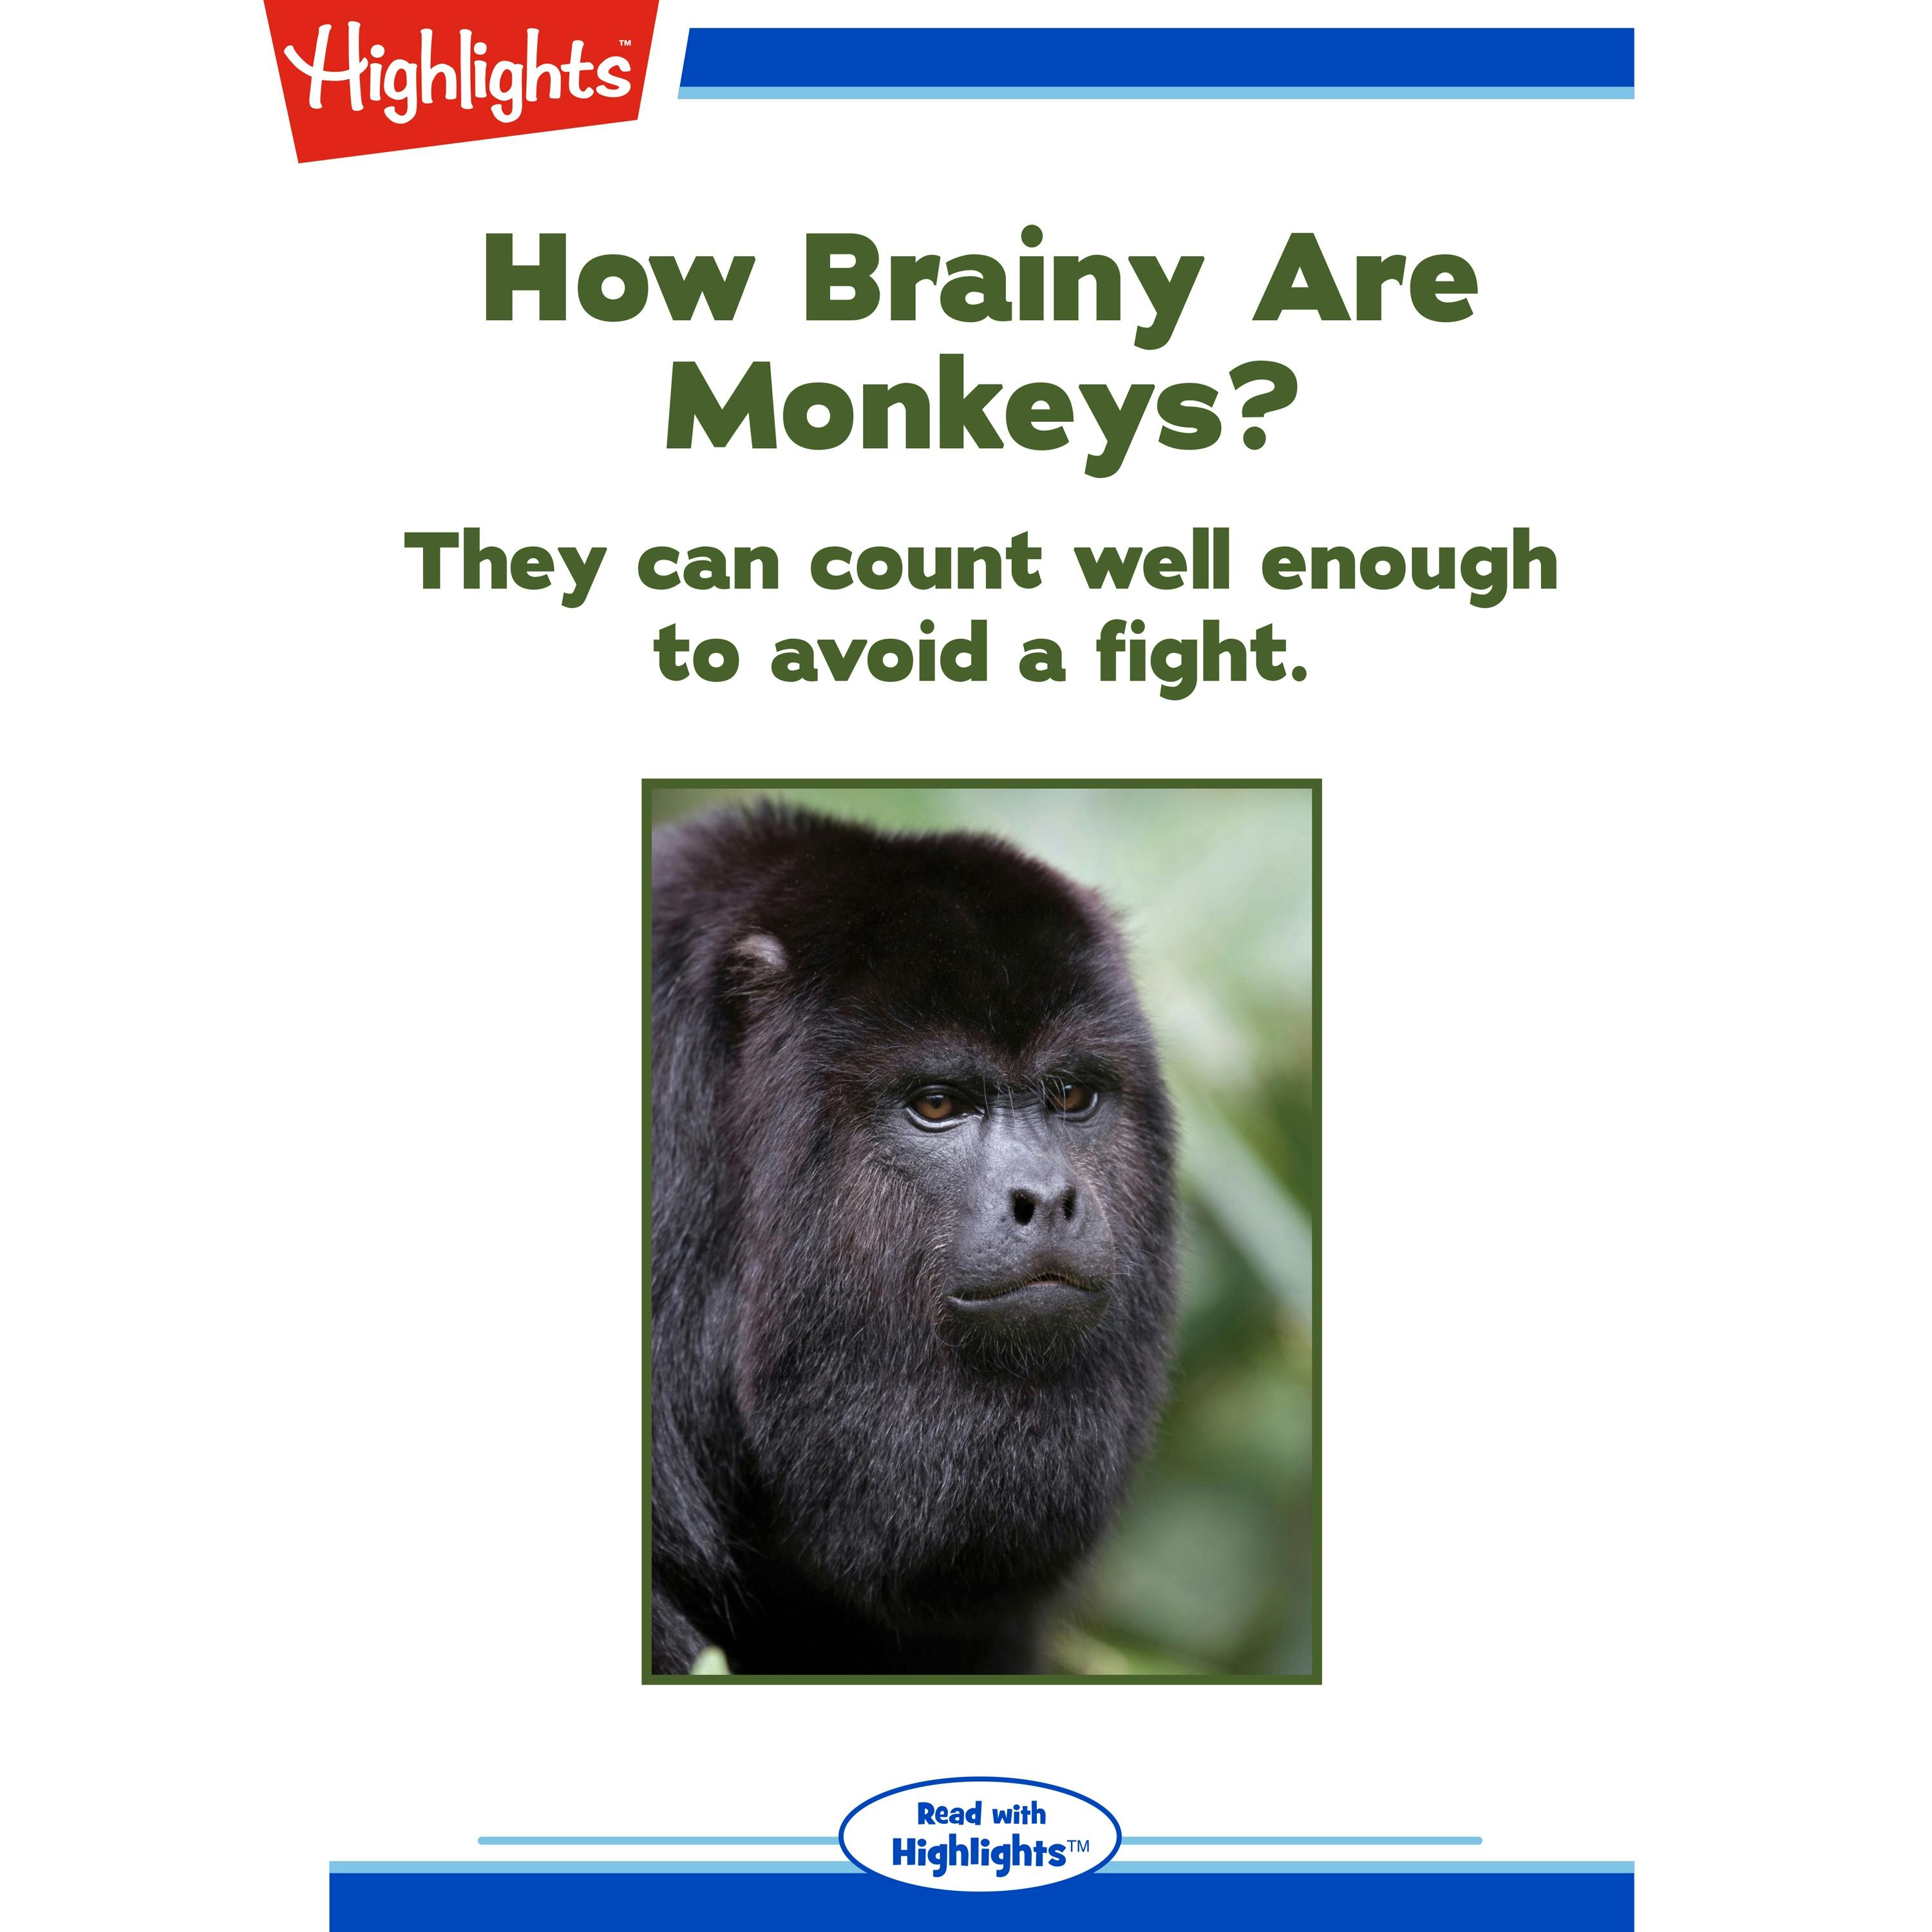 How Brainy Are Monkeys? - Alison Pearce Stevens, Ph.D.